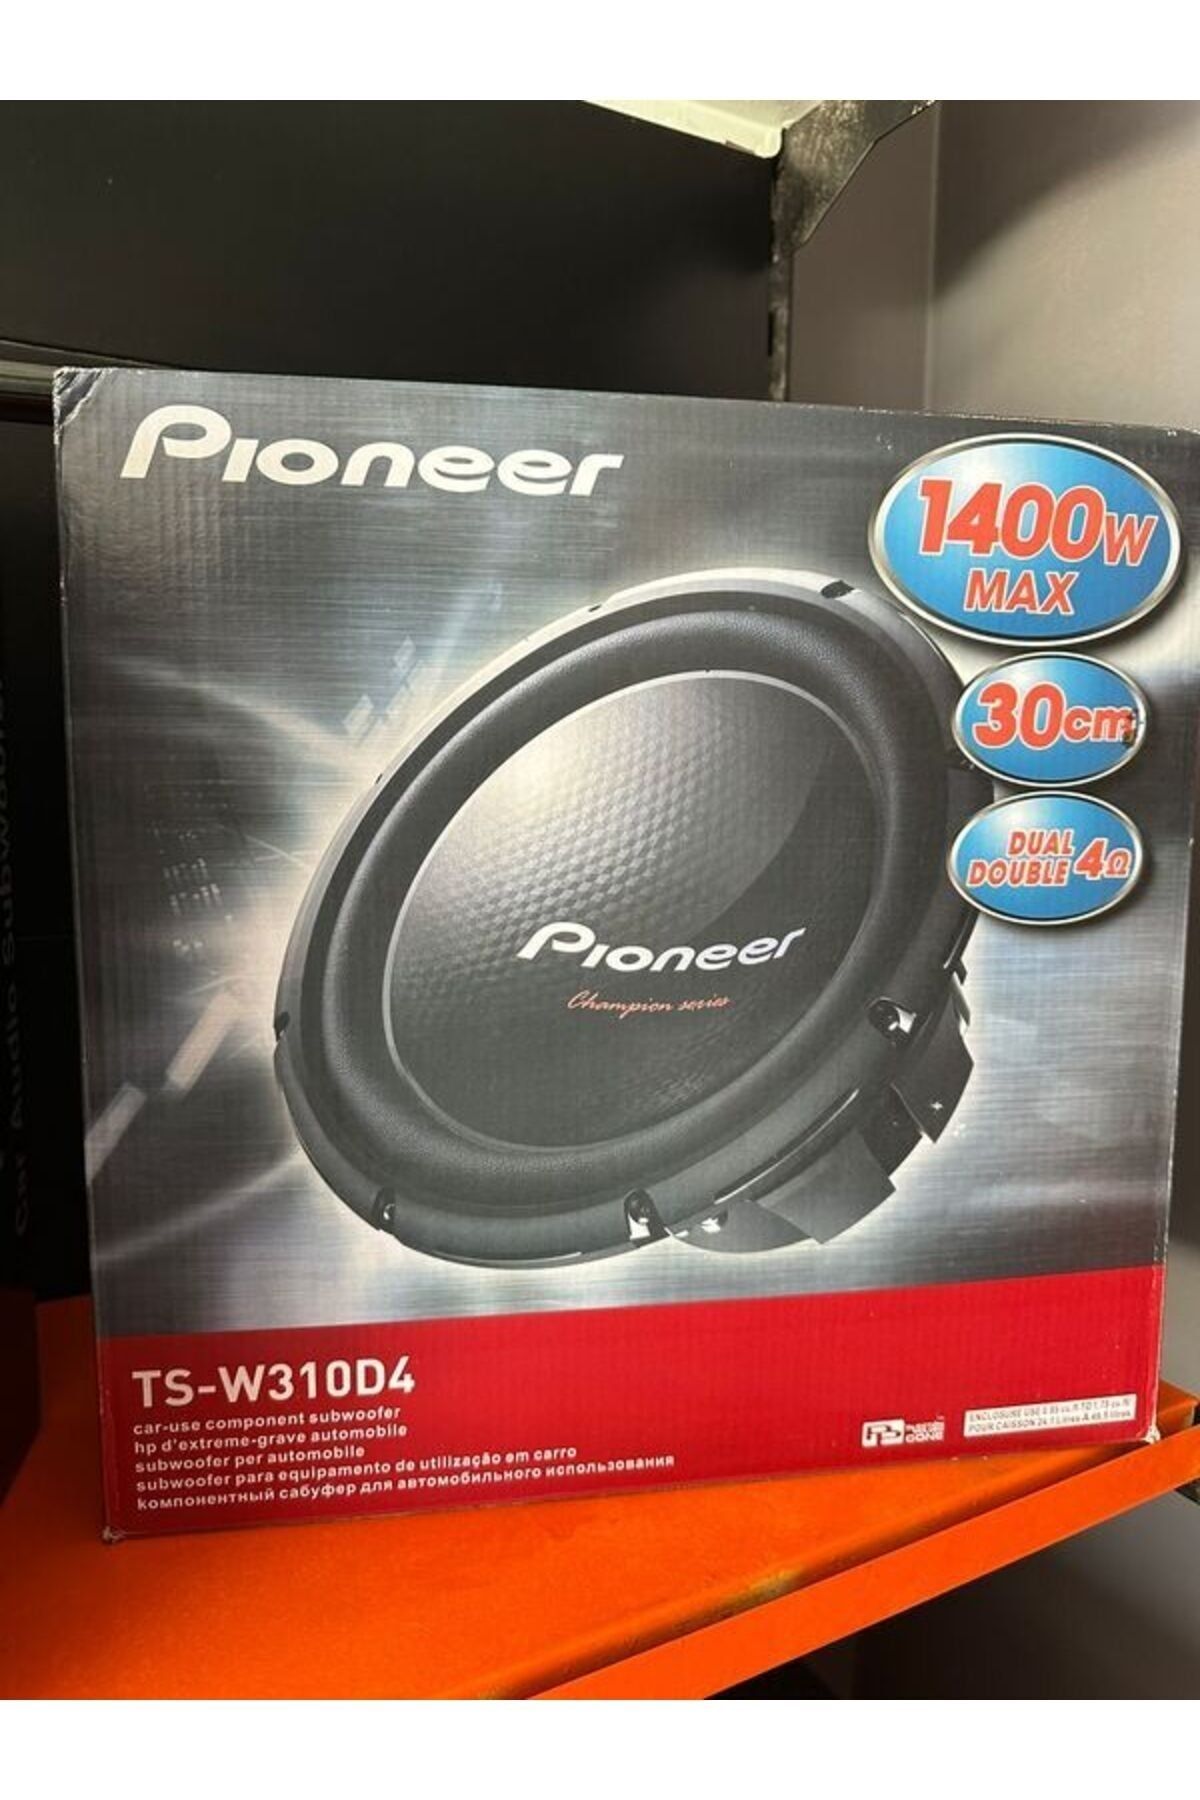 Понеер ts310 w1000 w цена. Pioneer 1400